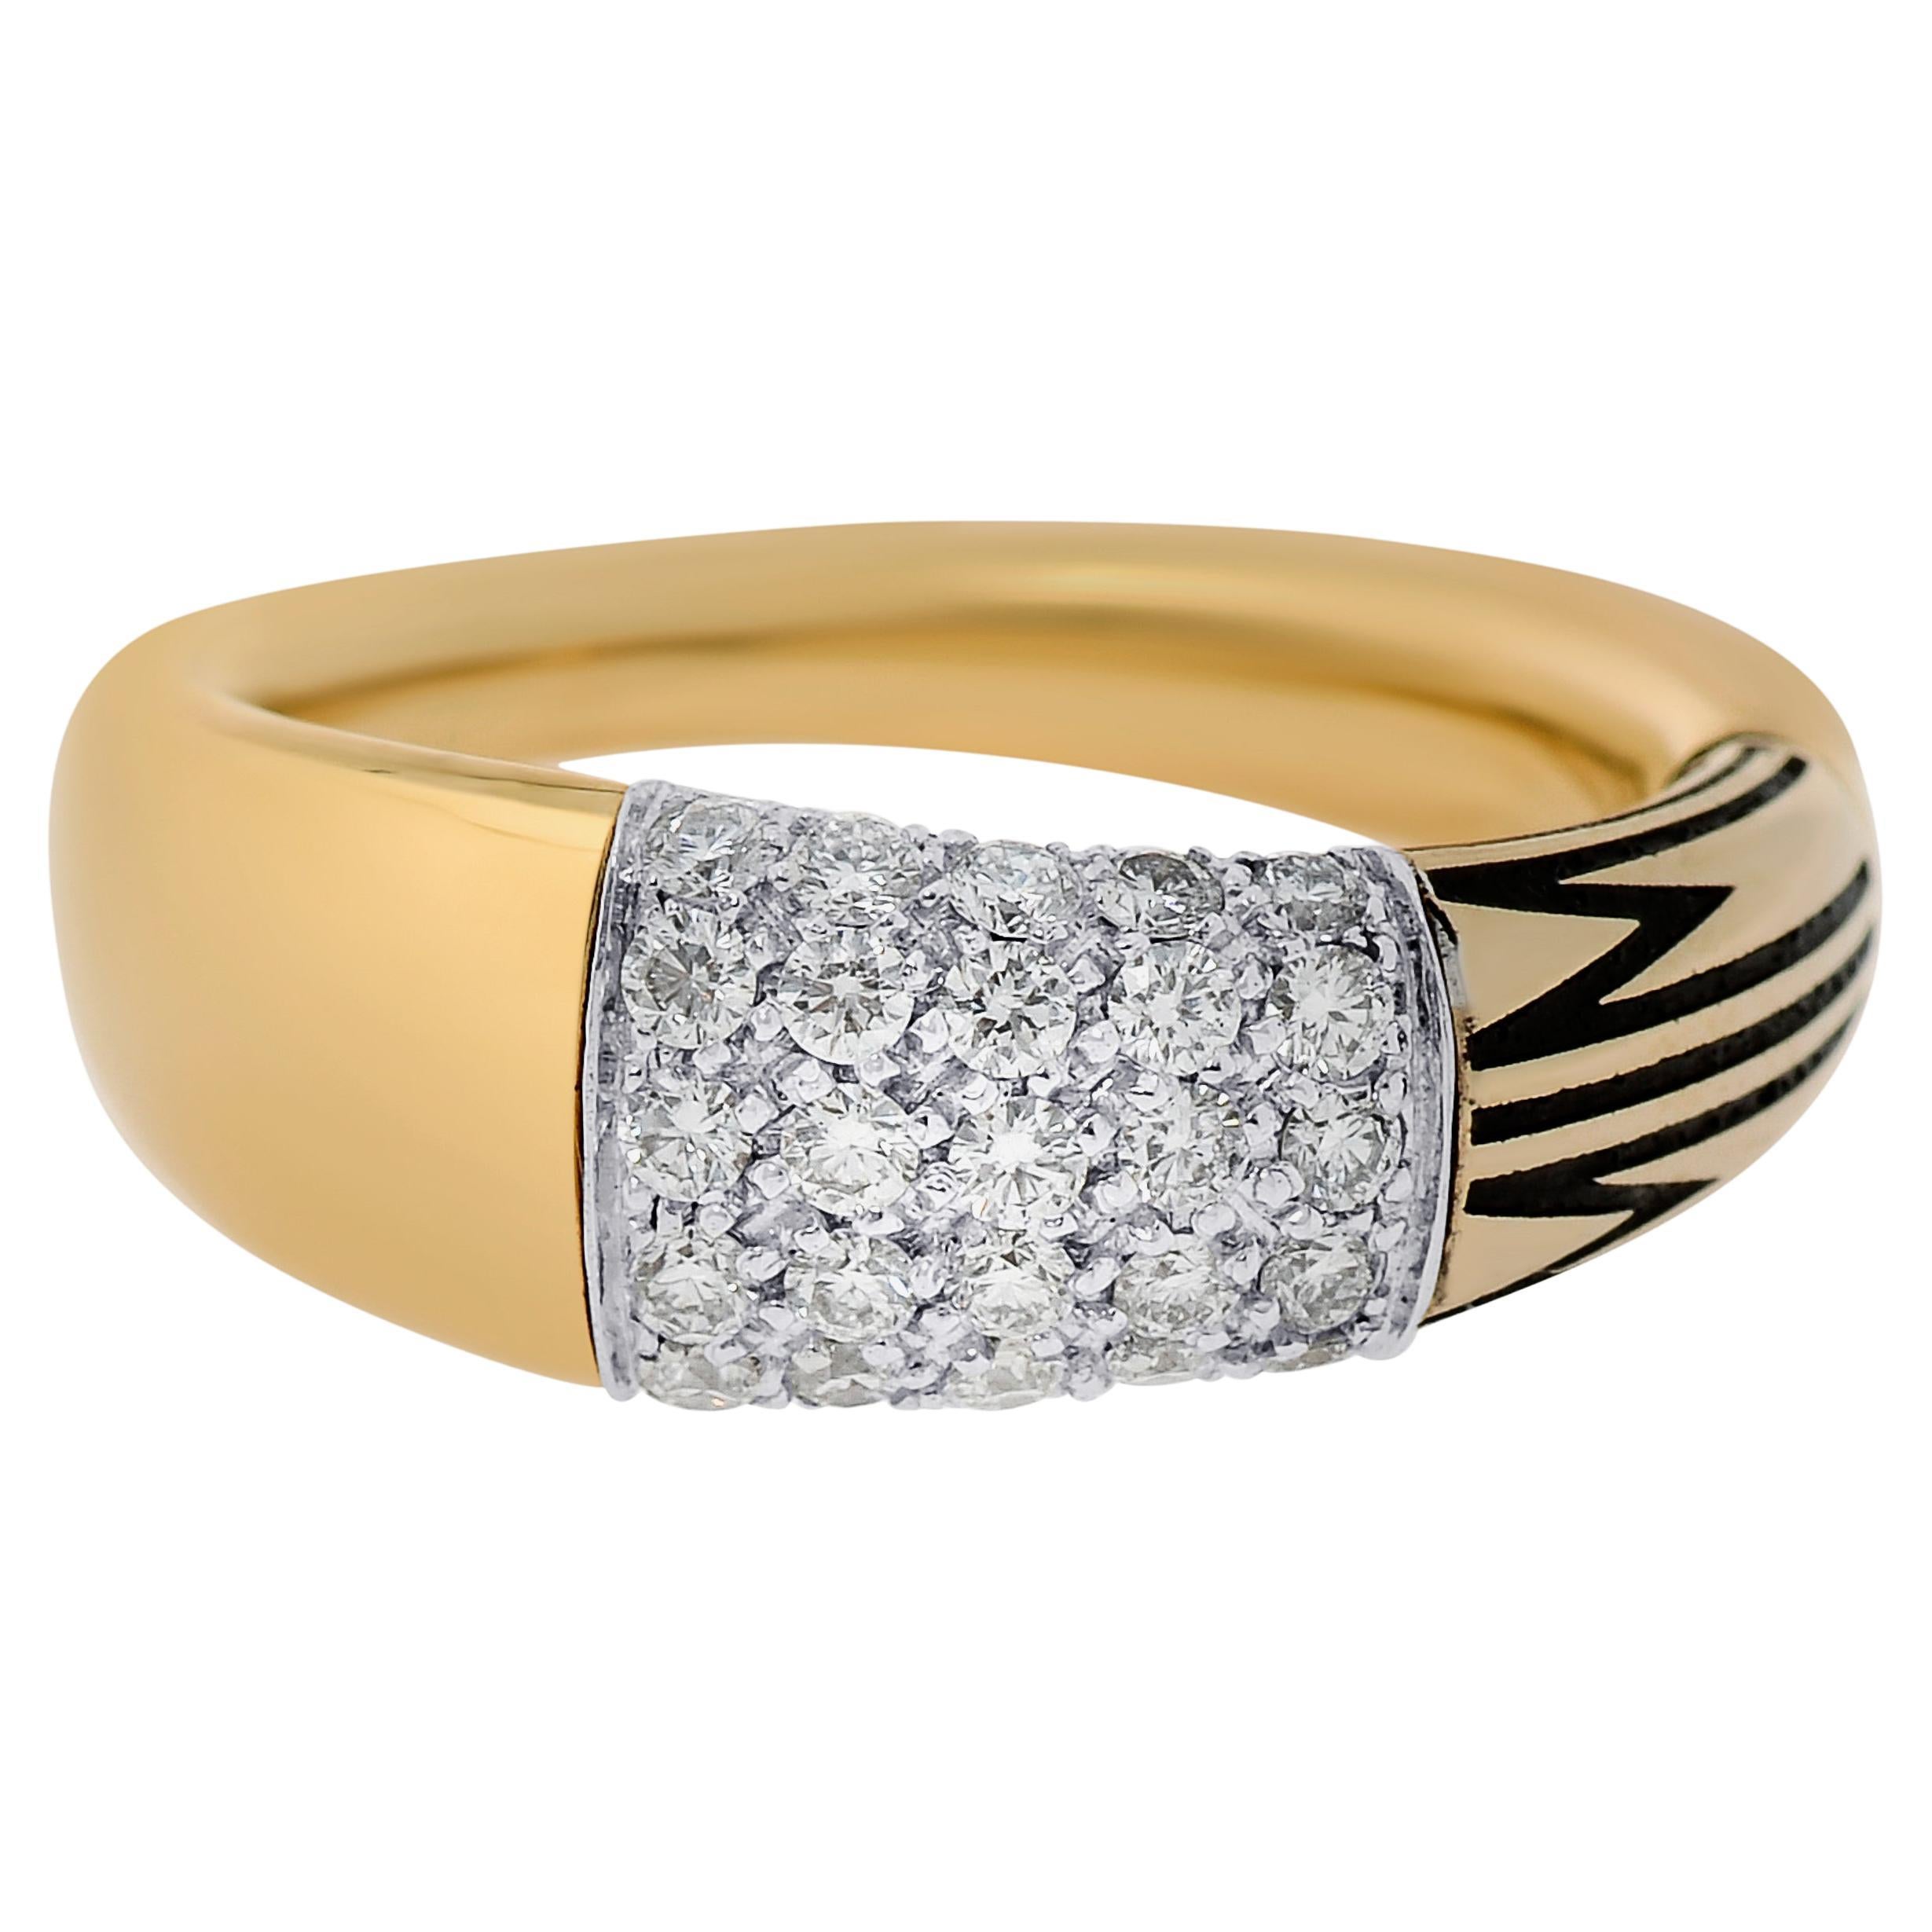 Mimi Milano Tam Tam 18K Yellow & White Gold, Diamond Ring sz 6.75 For Sale